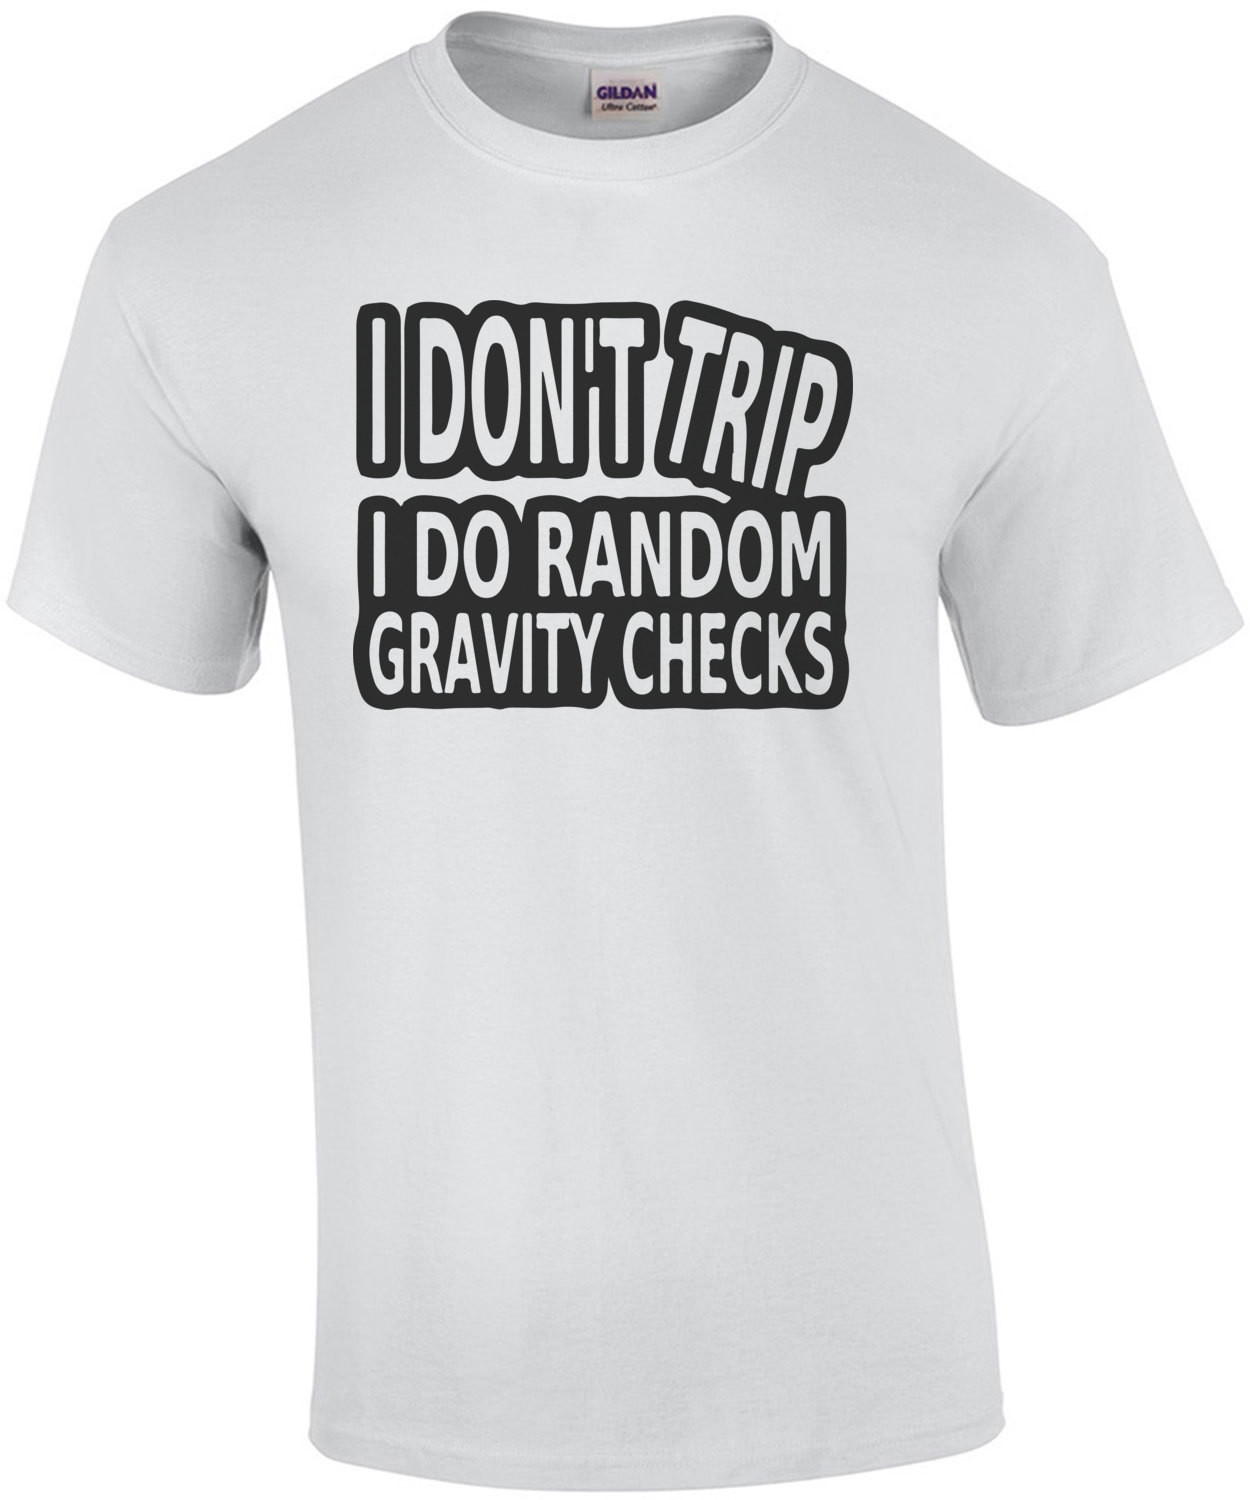 I don't trip I do random gravity checks t-shirt